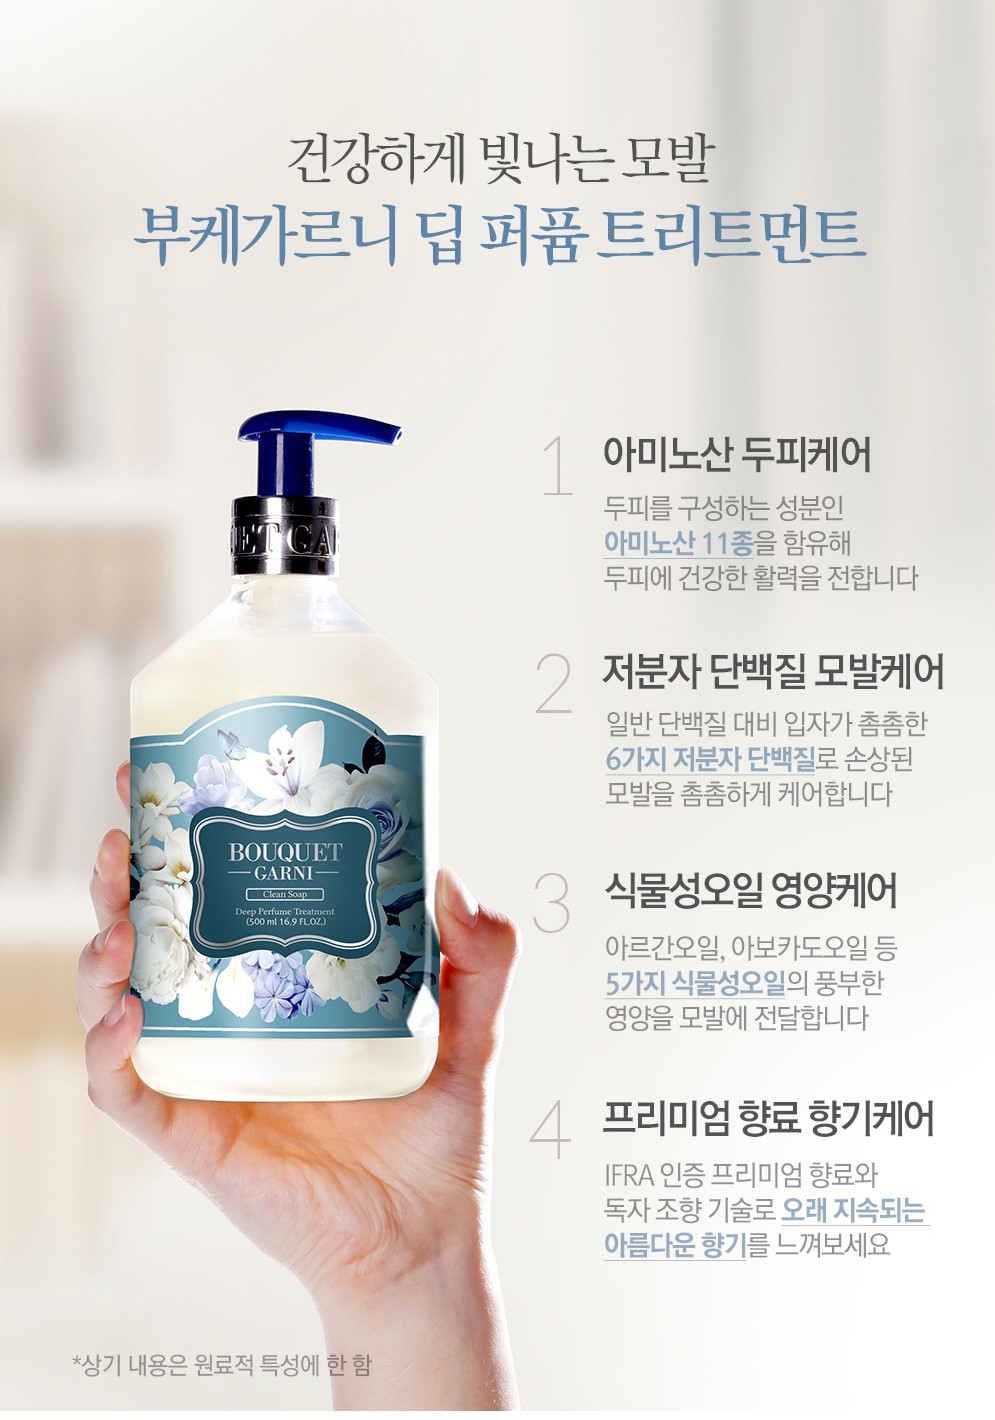 韓國食品-[Bouquet] Garni Deep Perfume Shampoo (Clean Soap) 500ml